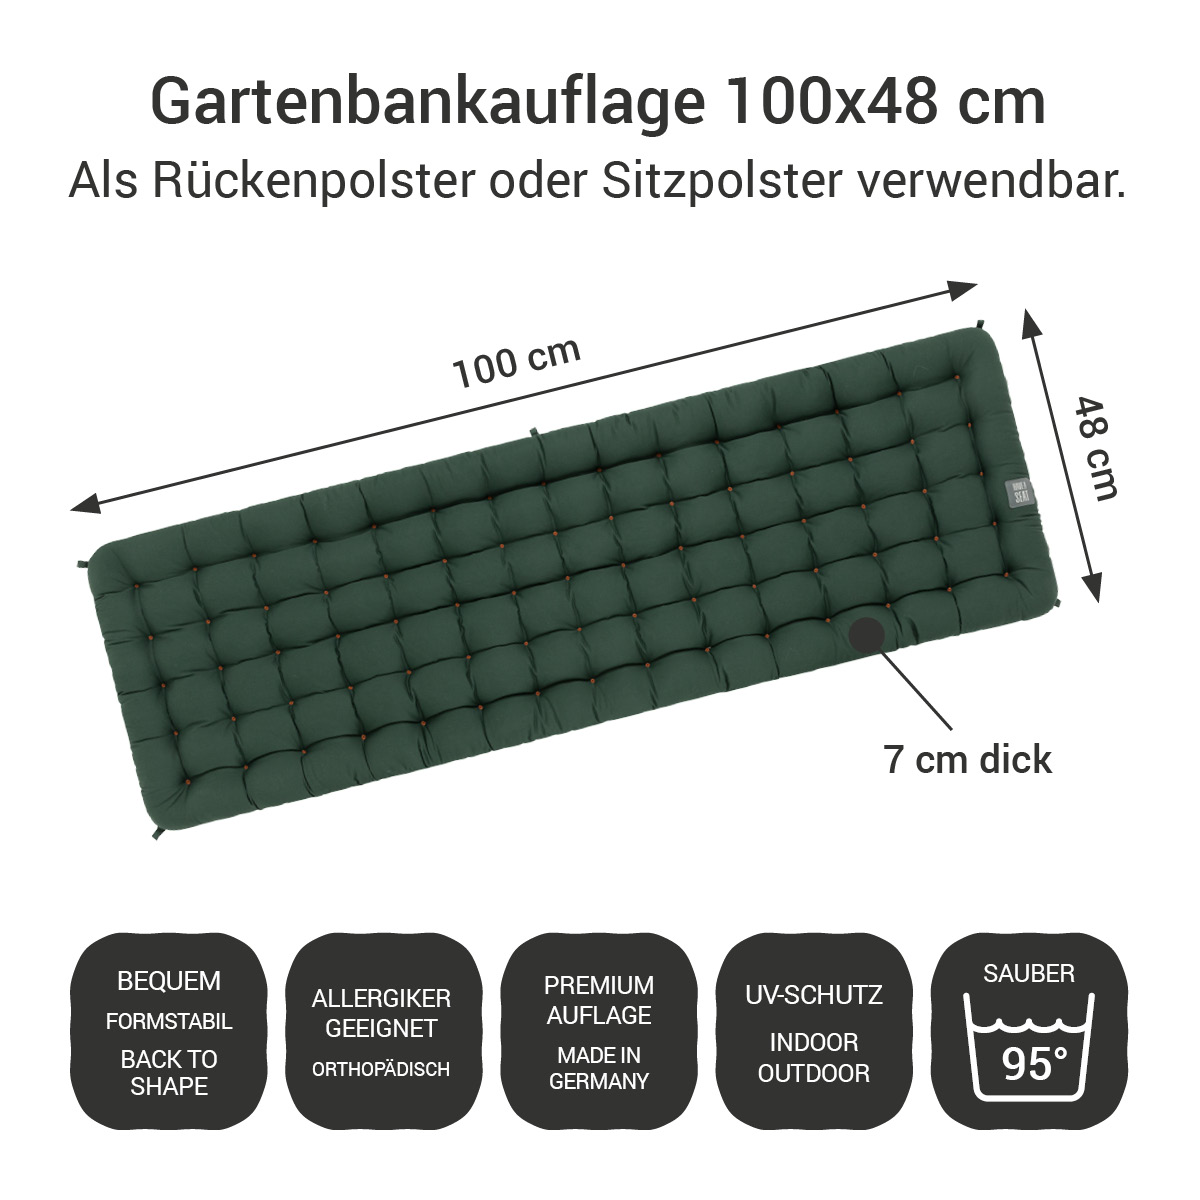 Gartenbank Auflagen (2tlg.) dunkelgrün 100x48 cm / 100 x 50 cm | bequem & orthopädisch, komplett im Ganzen waschbar bis 95°C, wetterfest, Made in Germany